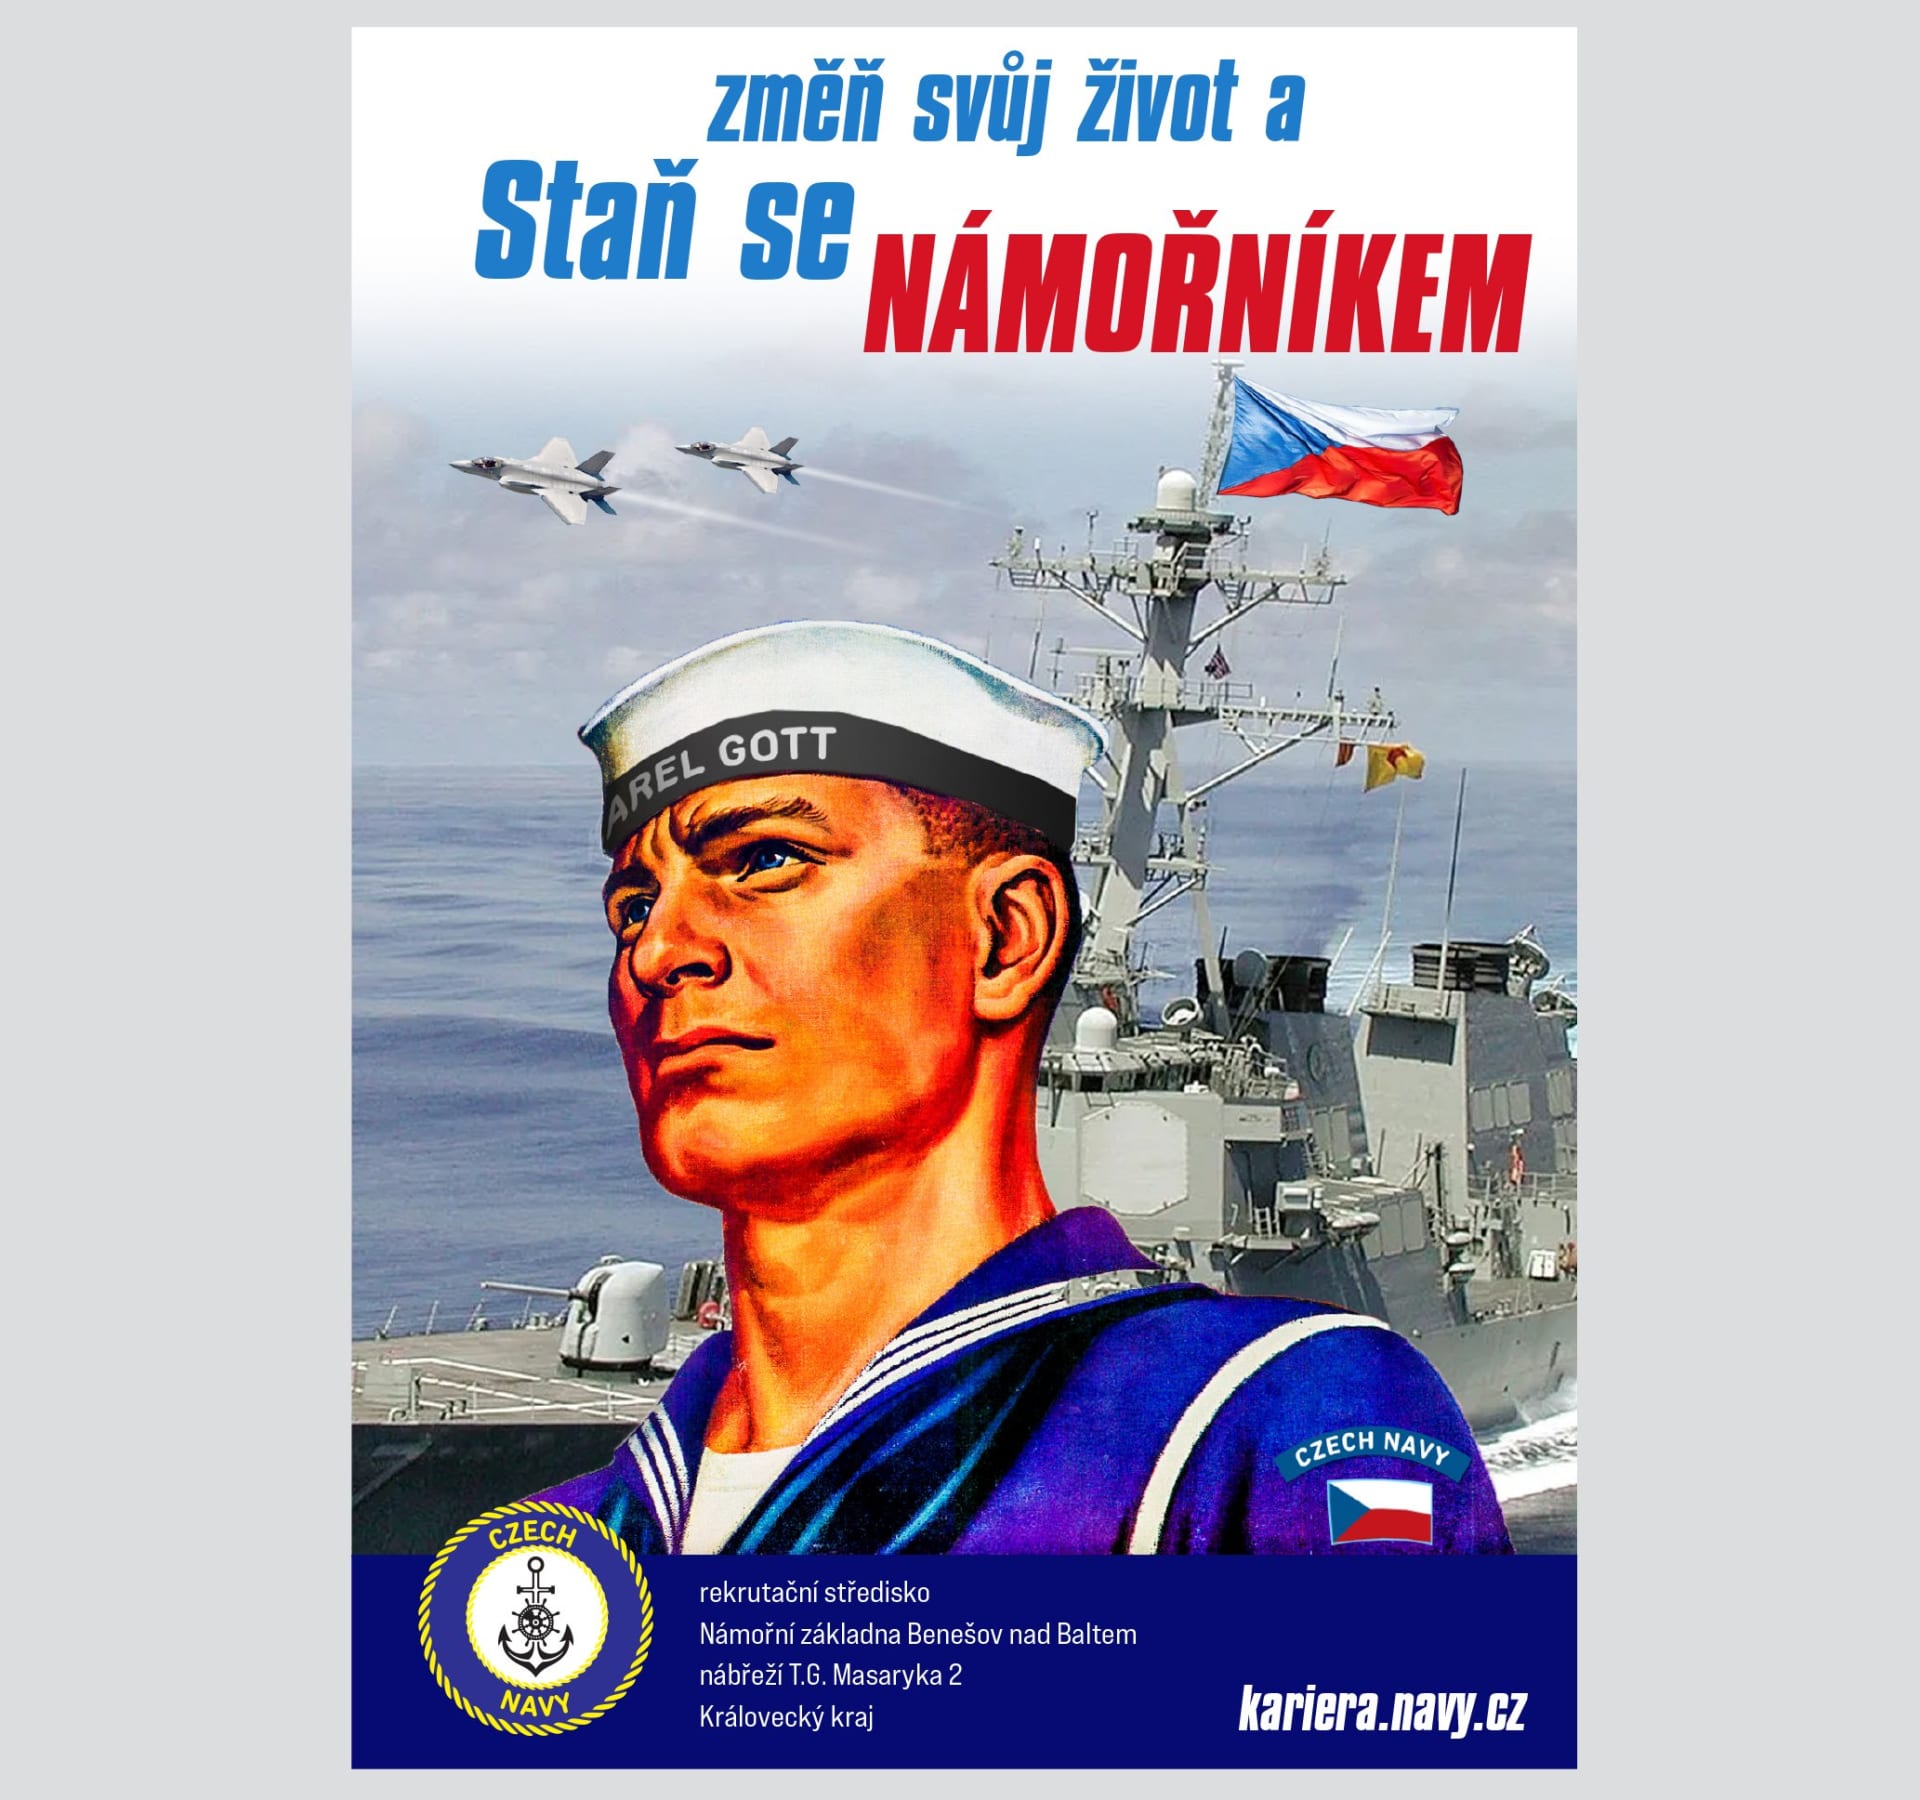 „Staň se námořníkem“, stojí na fiktivním plakátu pro nábor rekrutů, kteří by mohli sloužit v české baltské flotile v Královeckém kraji. Jejich námořní základnou by byl pochopitelně Benešov nad Baltem.